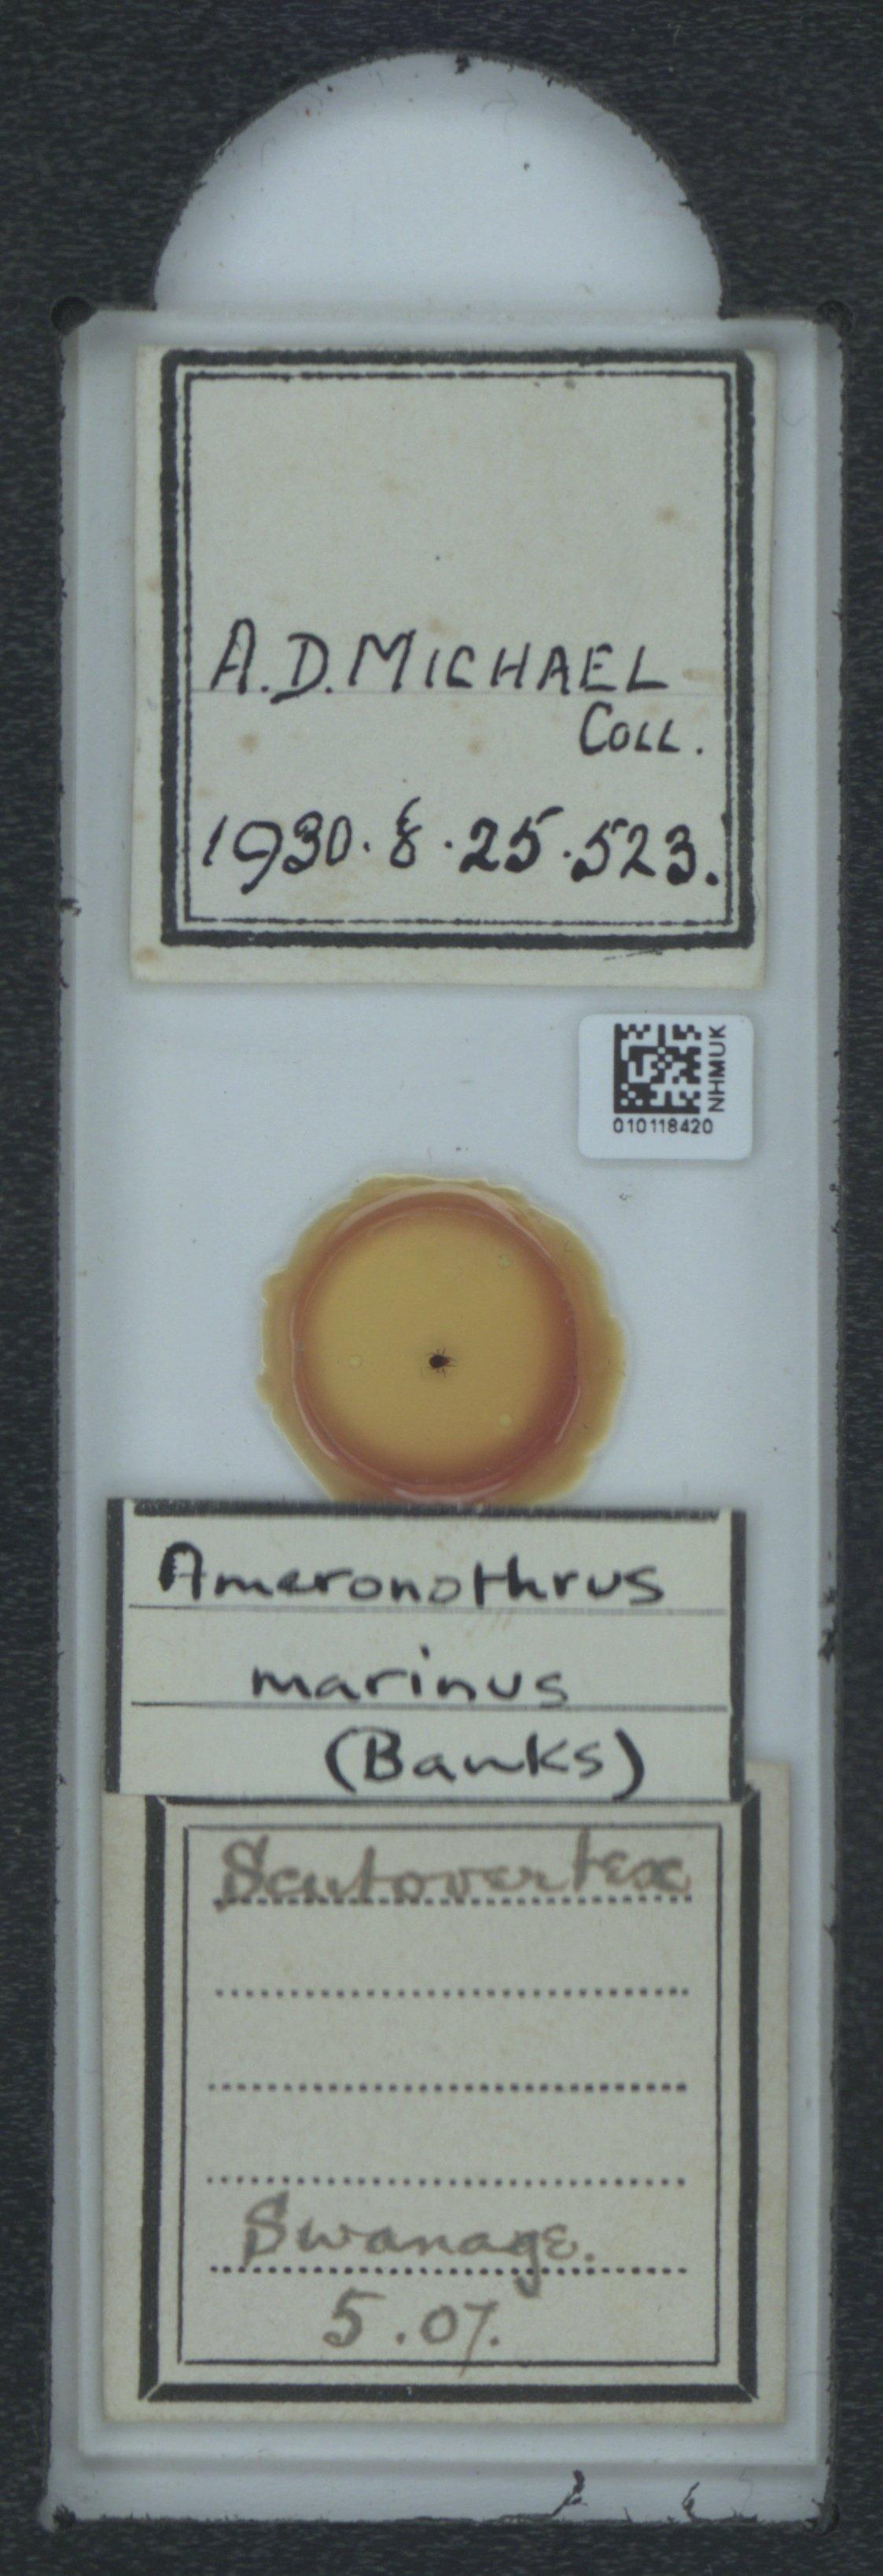 To NHMUK collection (Ameronothrus marinus (Banks, 1896); NHMUK:ecatalogue:6545221)